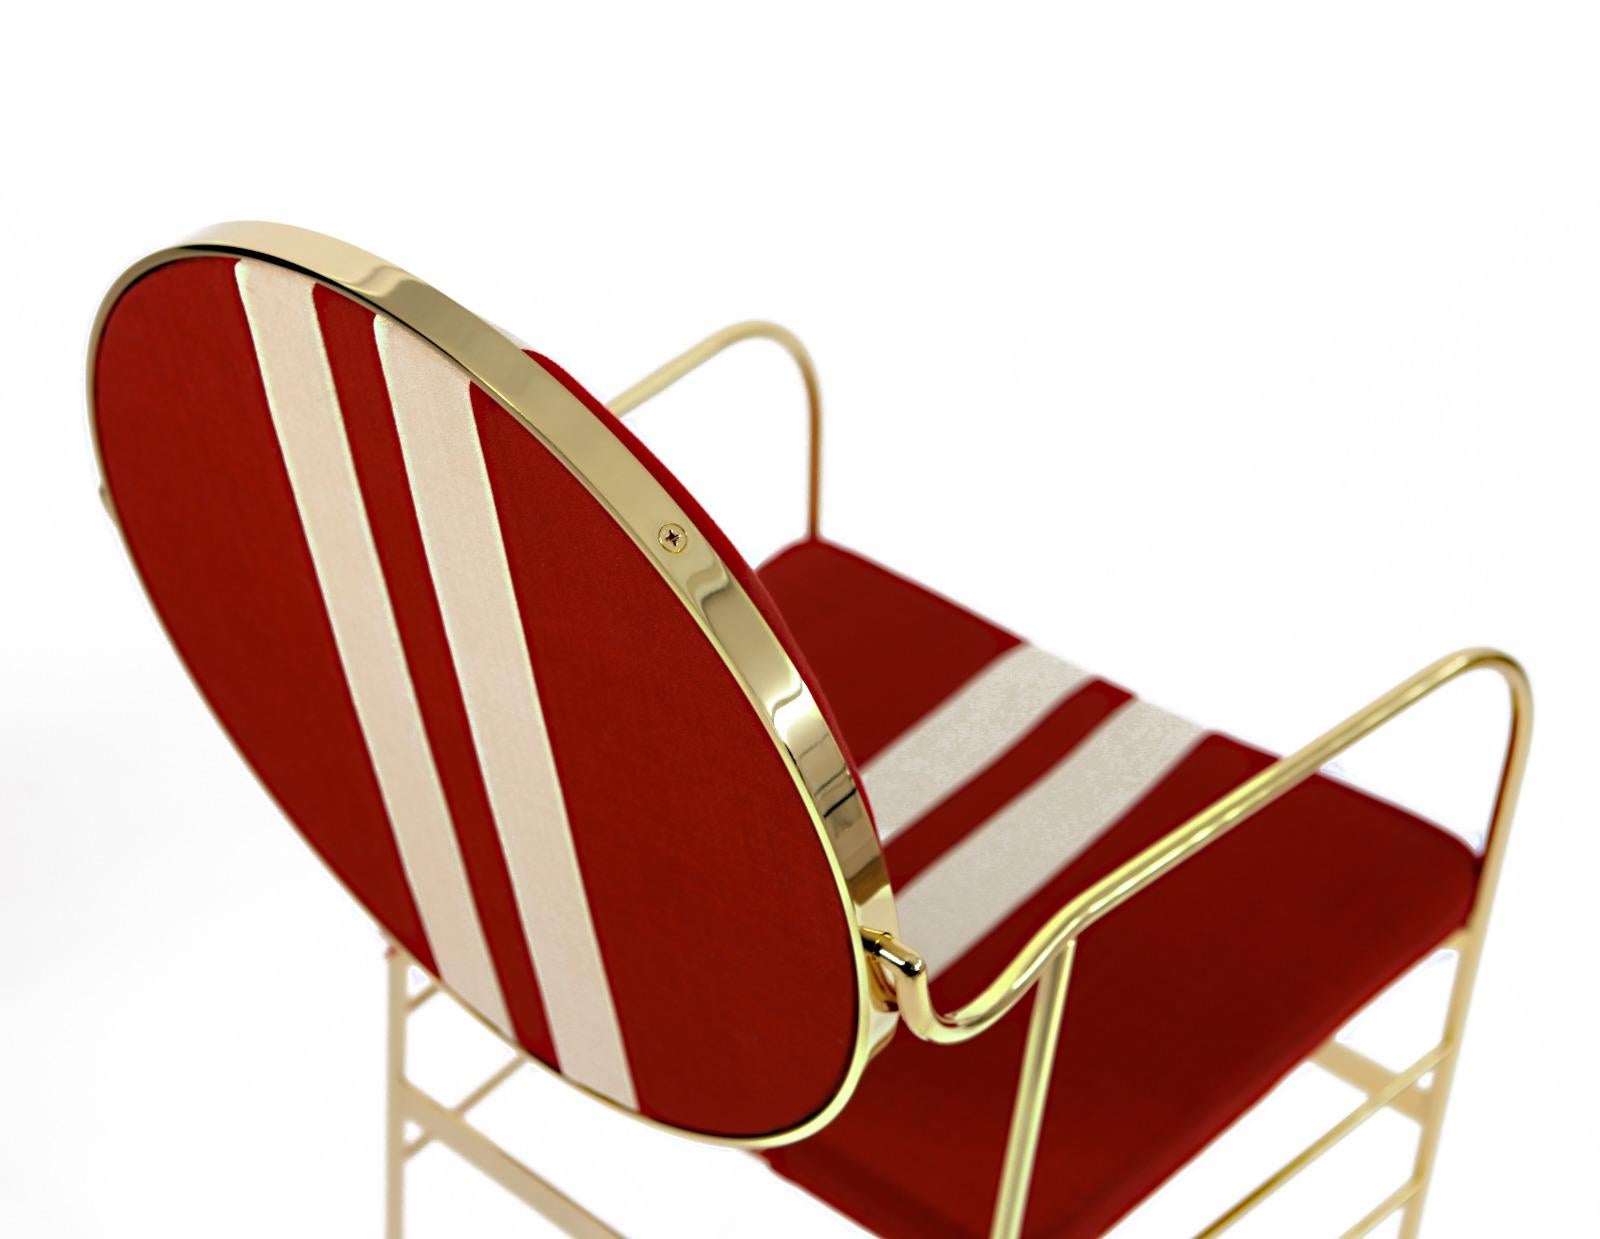 Dieser markante Stuhl hat ein 24-karätig vergoldetes Eisengestell und elegante Füße aus verzinktem Messing. Die Rückenlehne kann auf ihrem eigenen Gestell gedreht werden, um die perfekte Neigung zu erreichen. Die Rückenlehne und die Sitzfläche sind